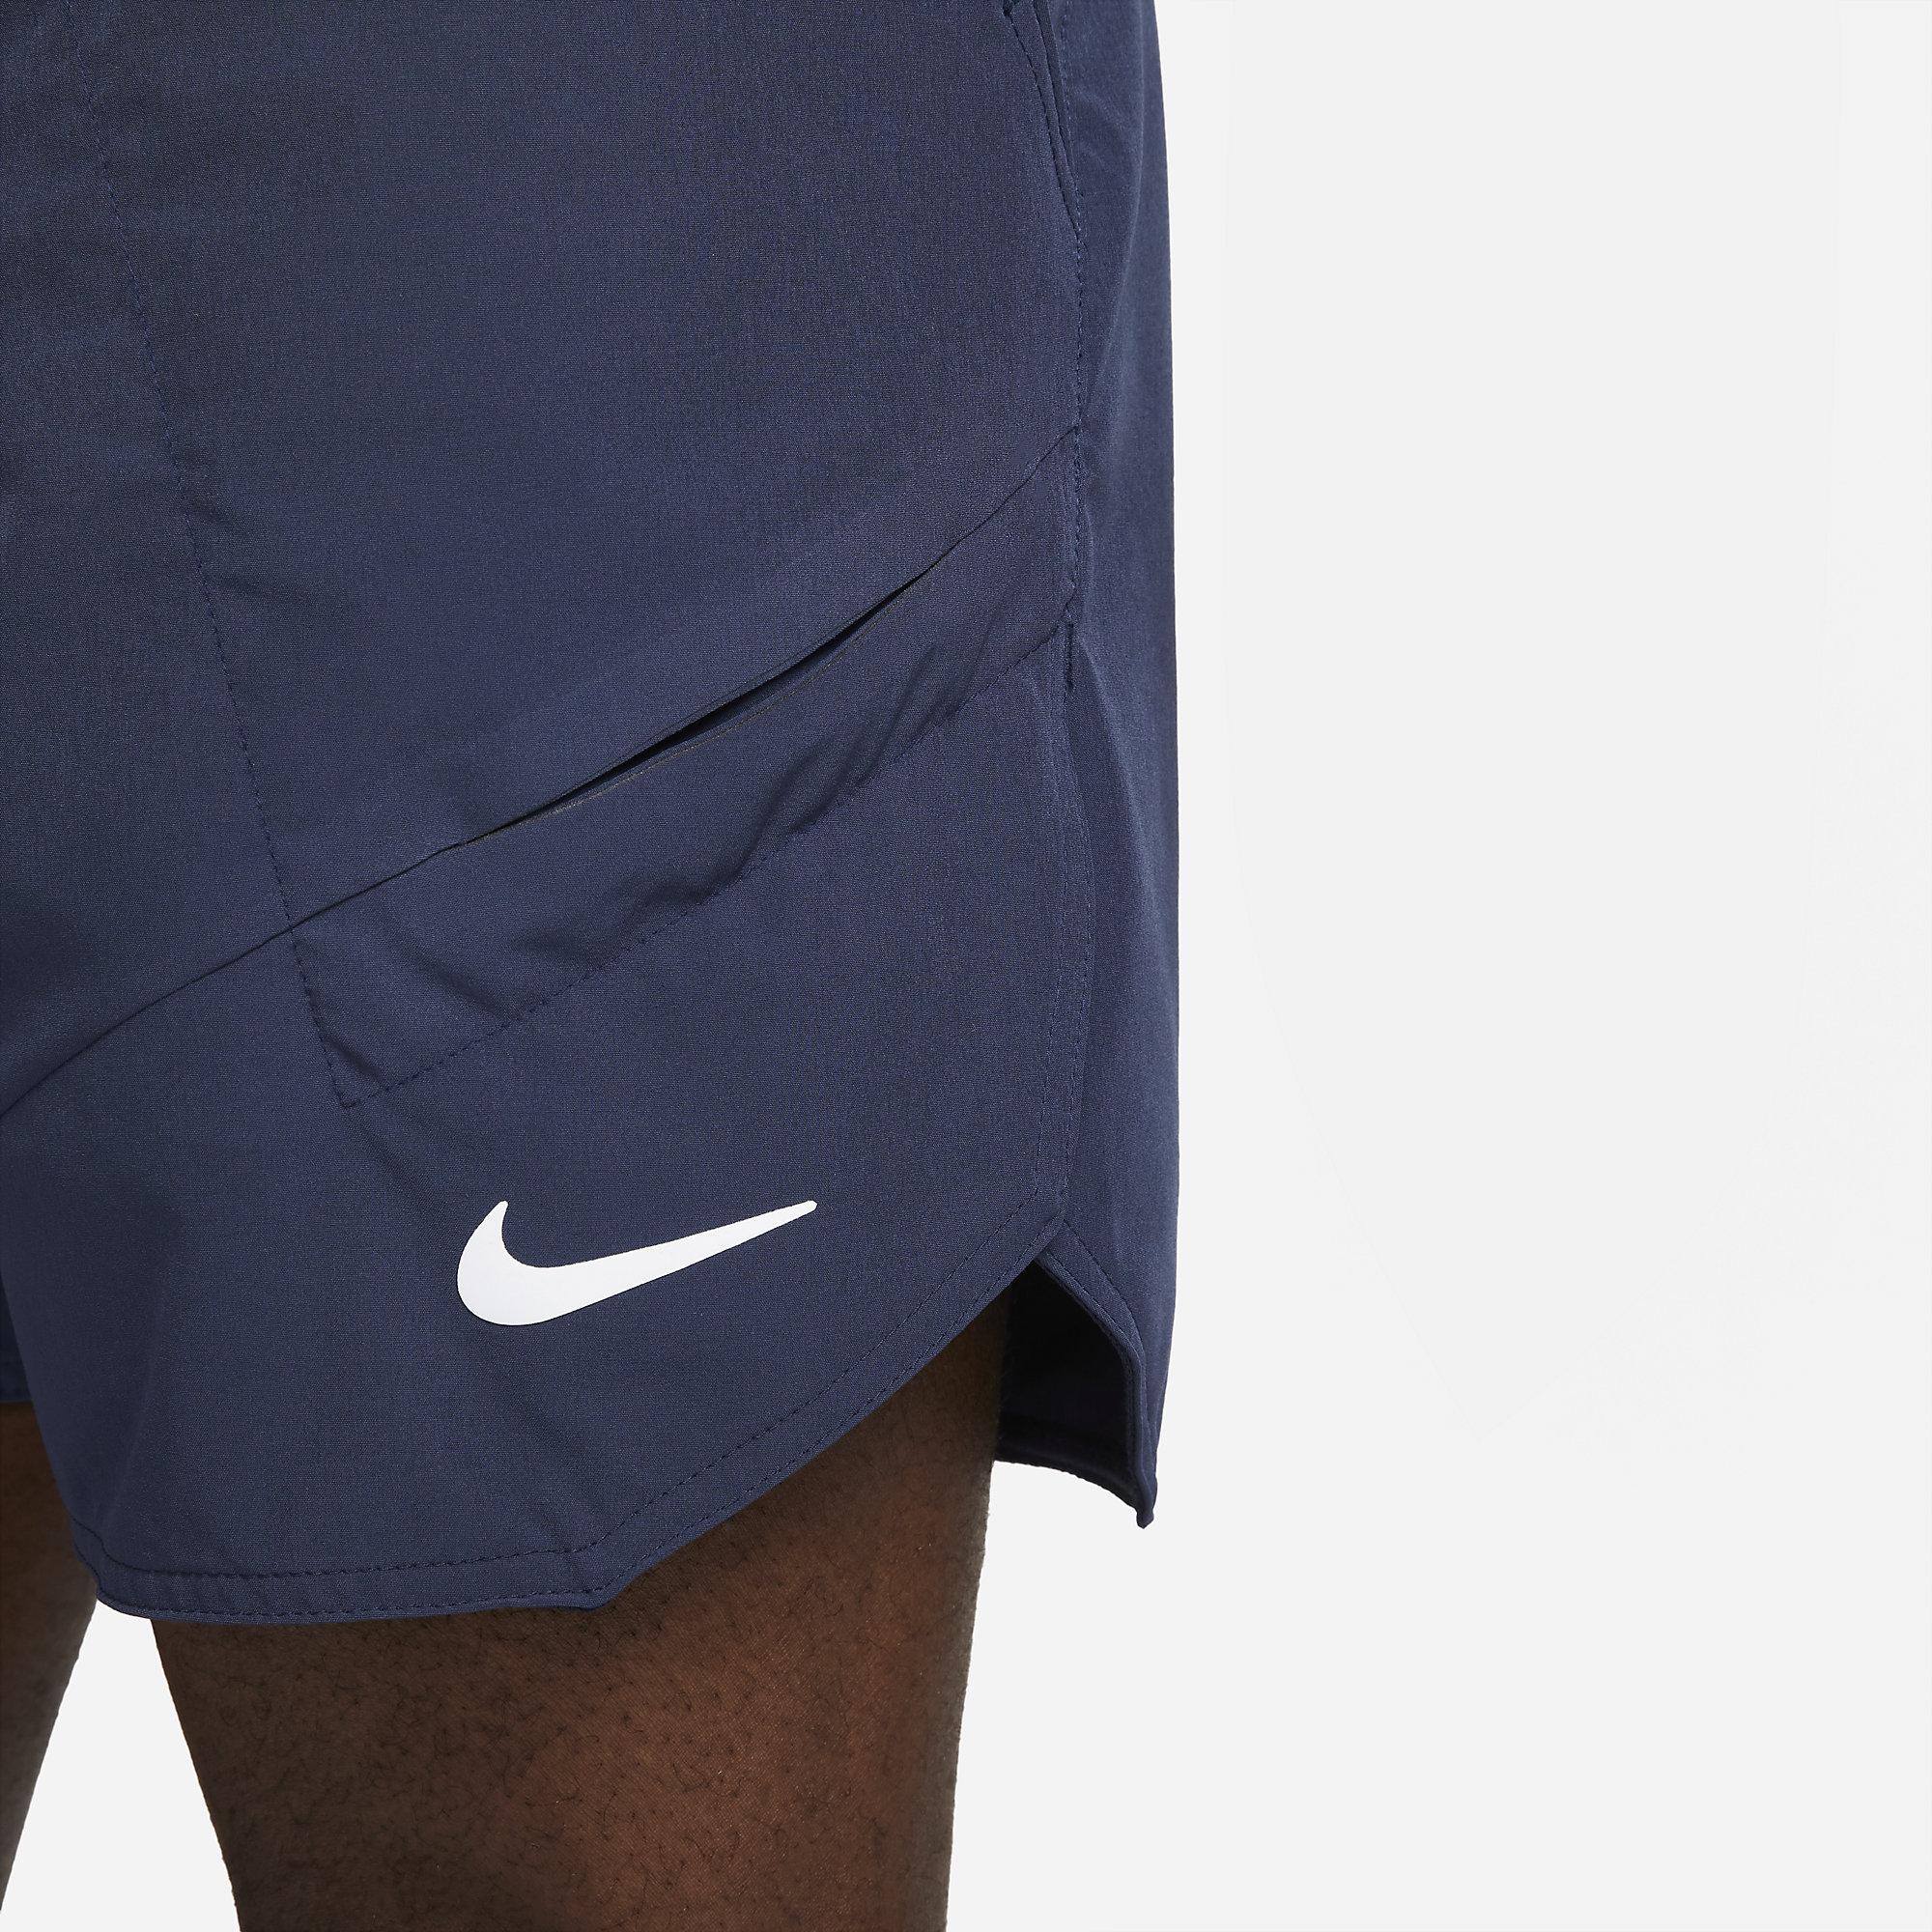 Nike Mens Dri-FIT Advantage Tennis Shorts - Obsidian - Tennisnuts.com